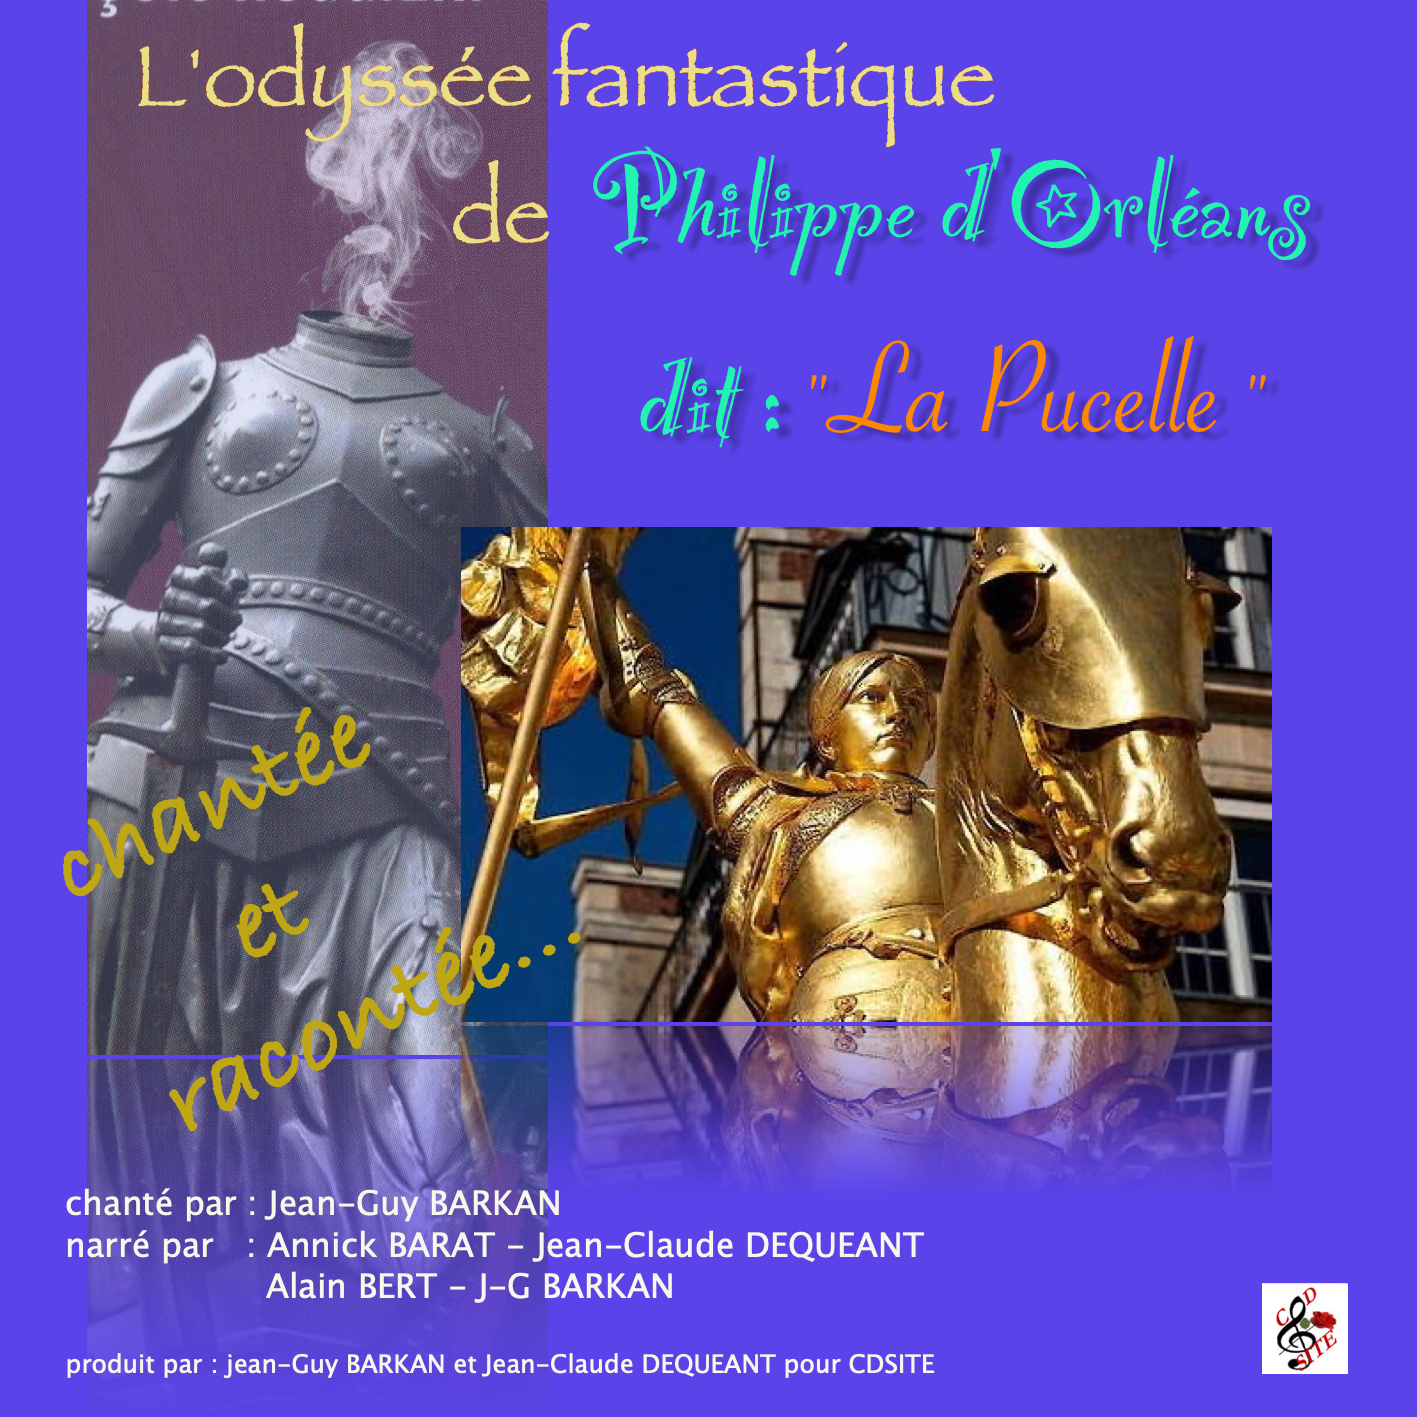 Couverture du livre audio L'odyssée fantastique de Philippe d'Arc dit "la pucelle" De Annik Barat  et Jean-Guy Barkan 